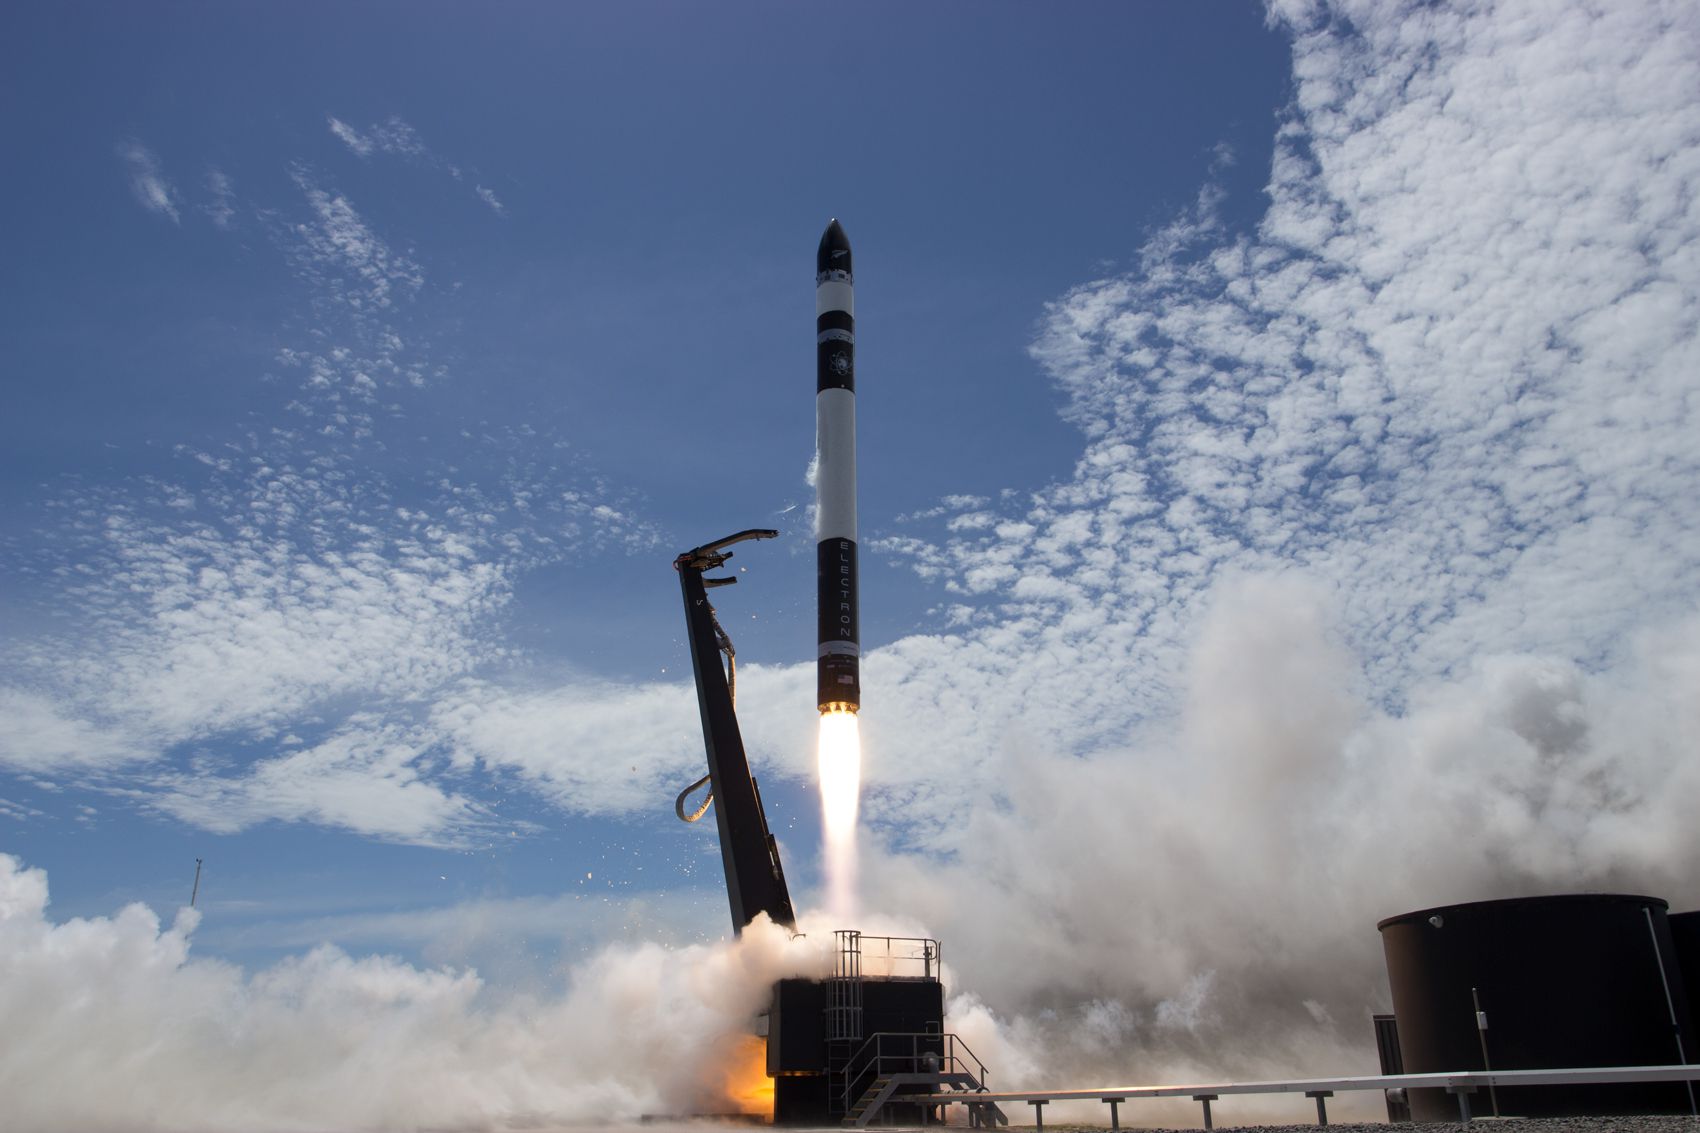 en la imagen se ve al cohete subiendo gracias al impulso de los motores mientras la plataforma de lanzamiento se suelta de este